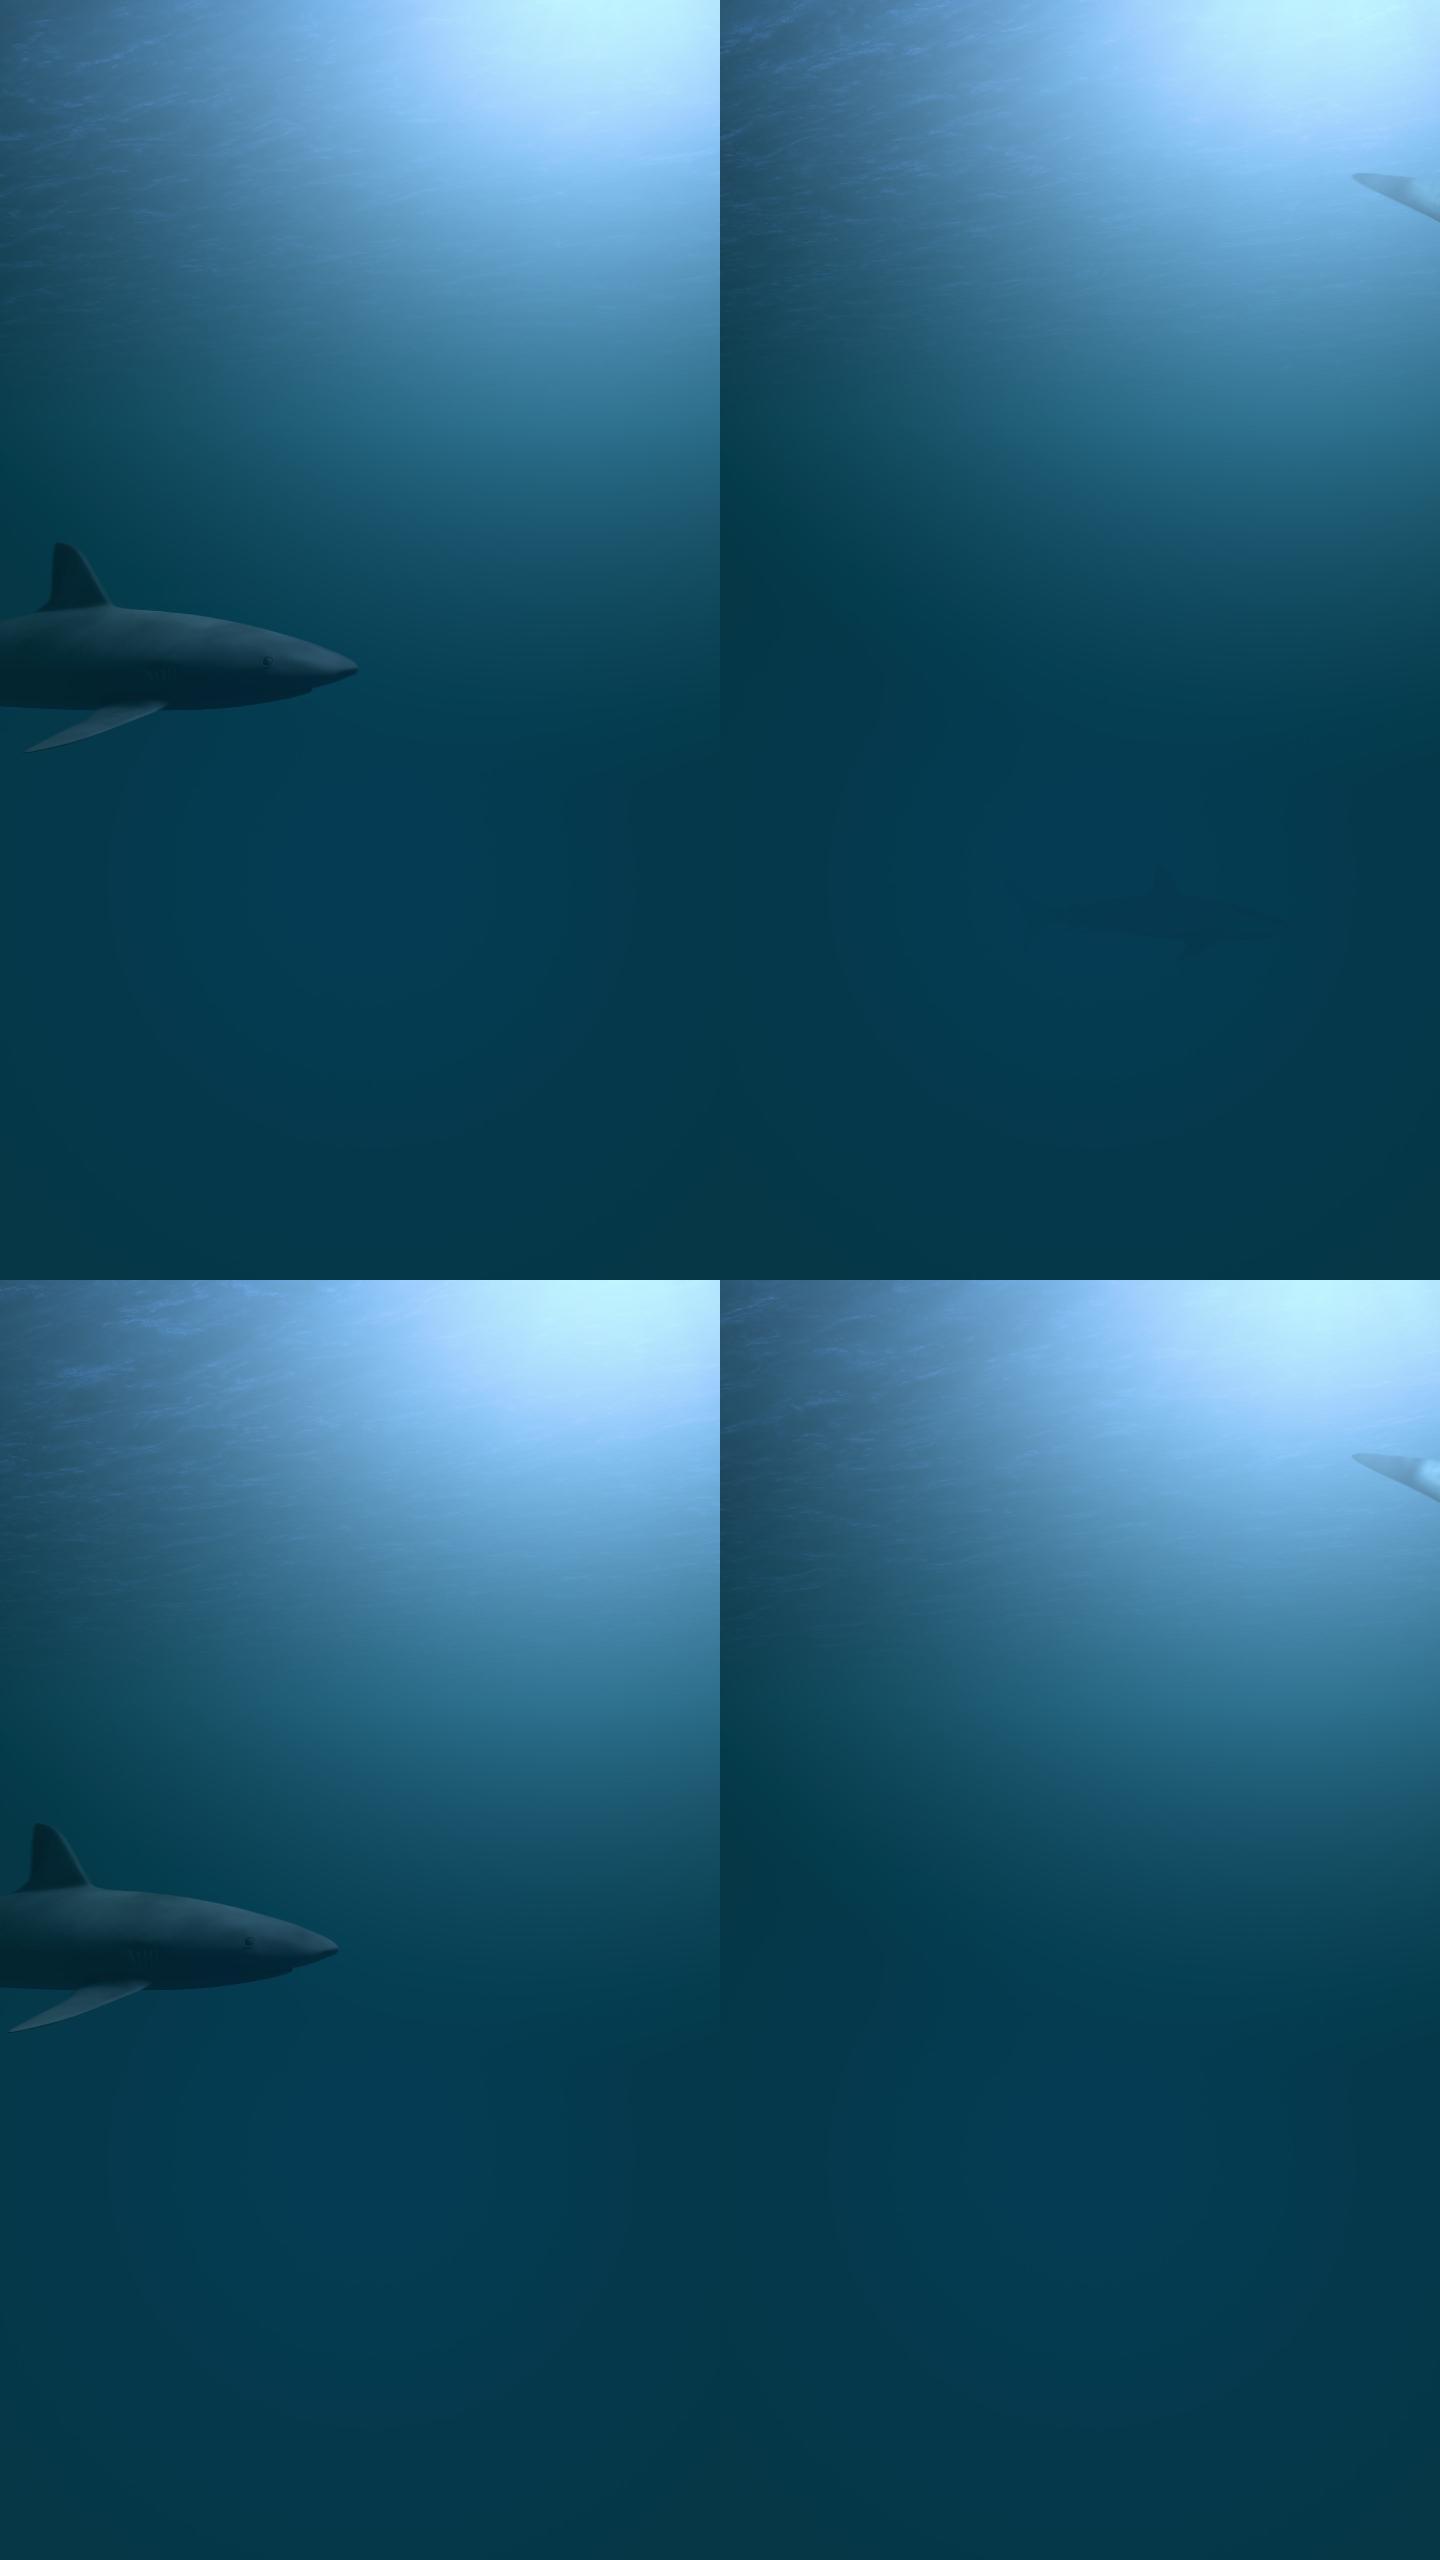 一群鲨鱼正在危险地靠近。